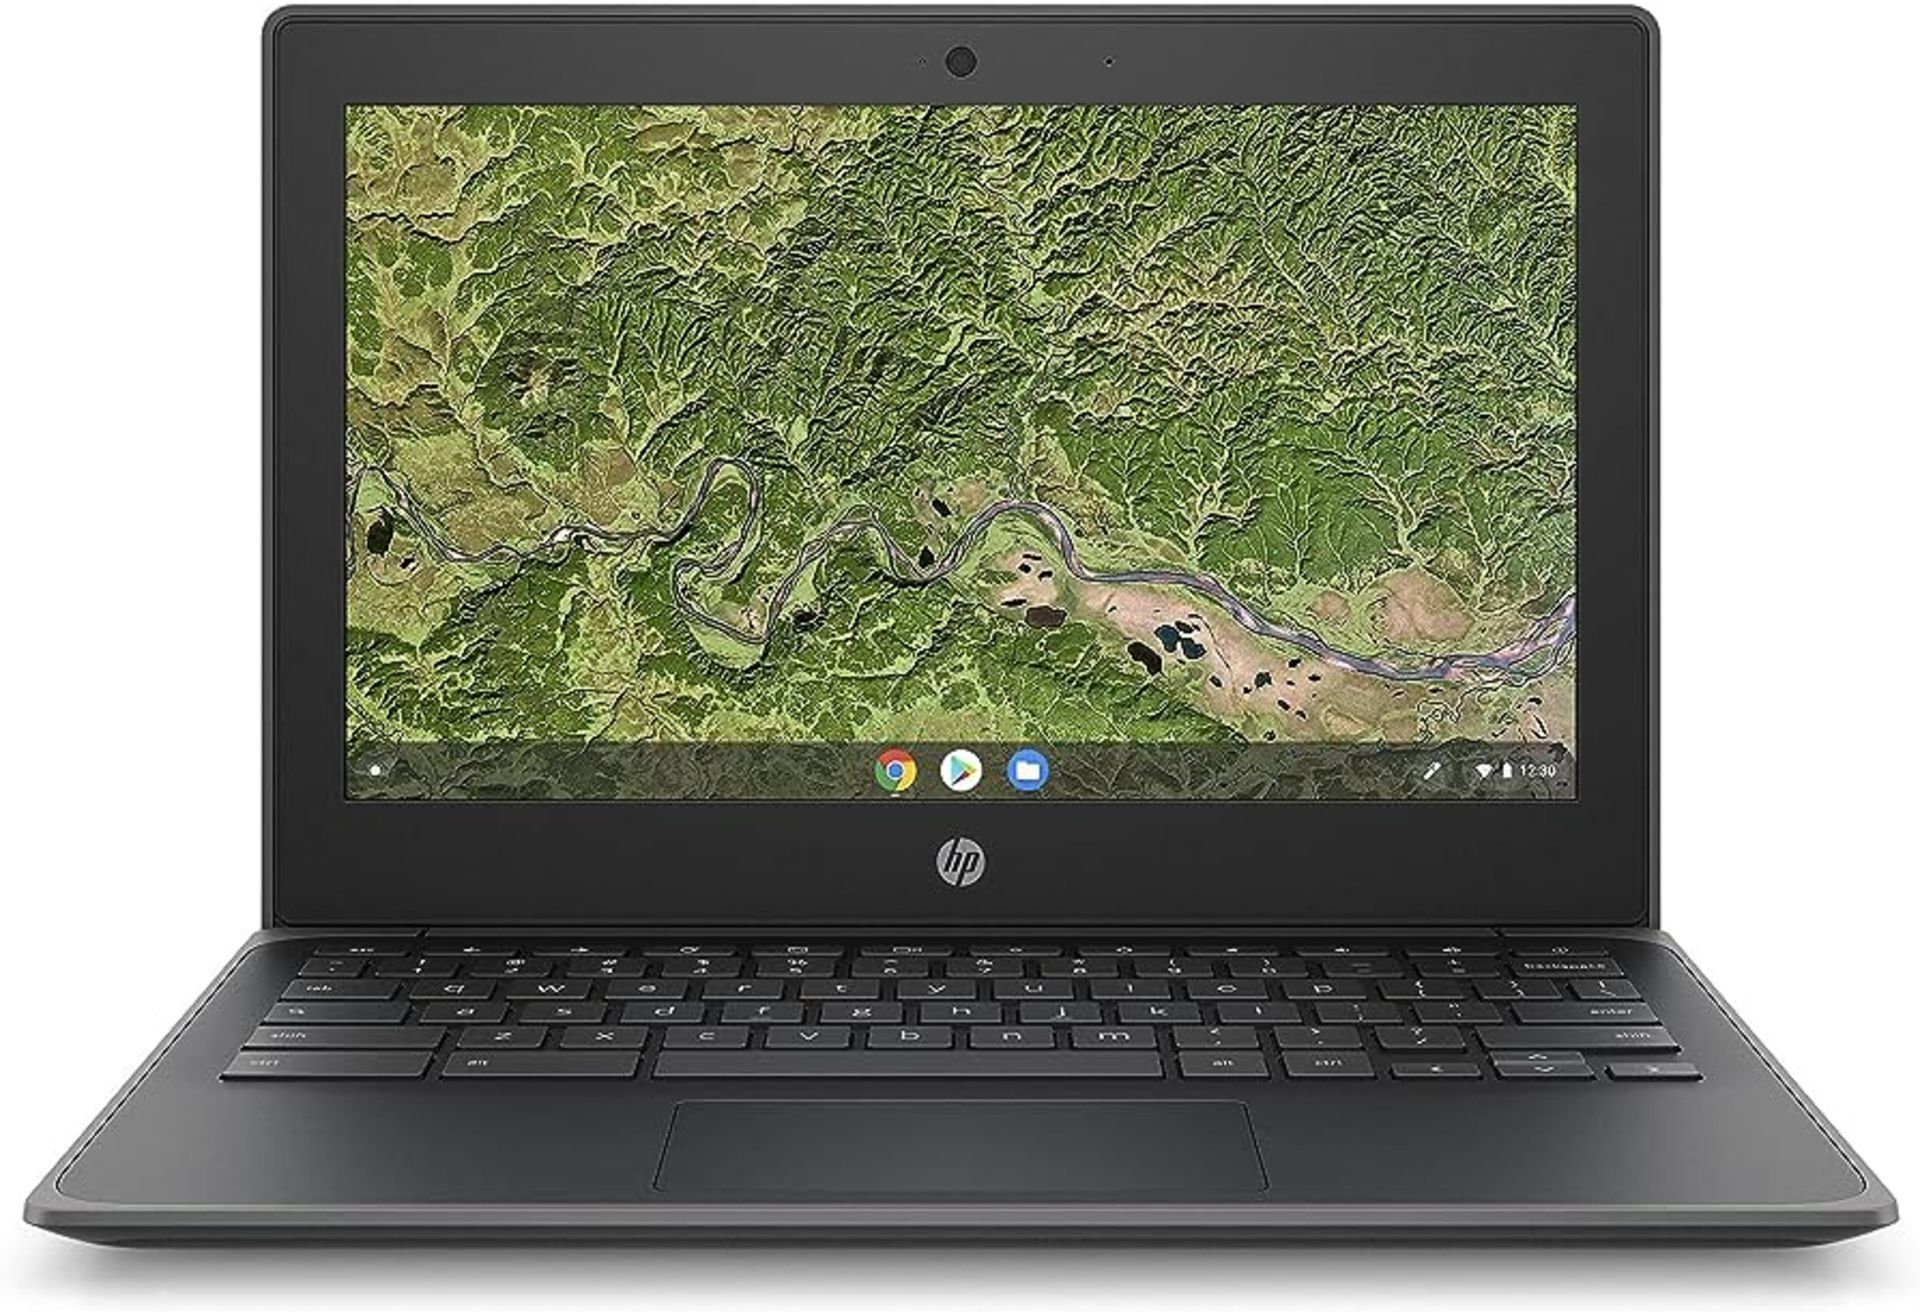 HP Chromebook 11A G8 Education Edition (OFC19EA) - AMD A4 9120C / 1.6 GHz, 4 GB RAM, 16 GB eMMC,